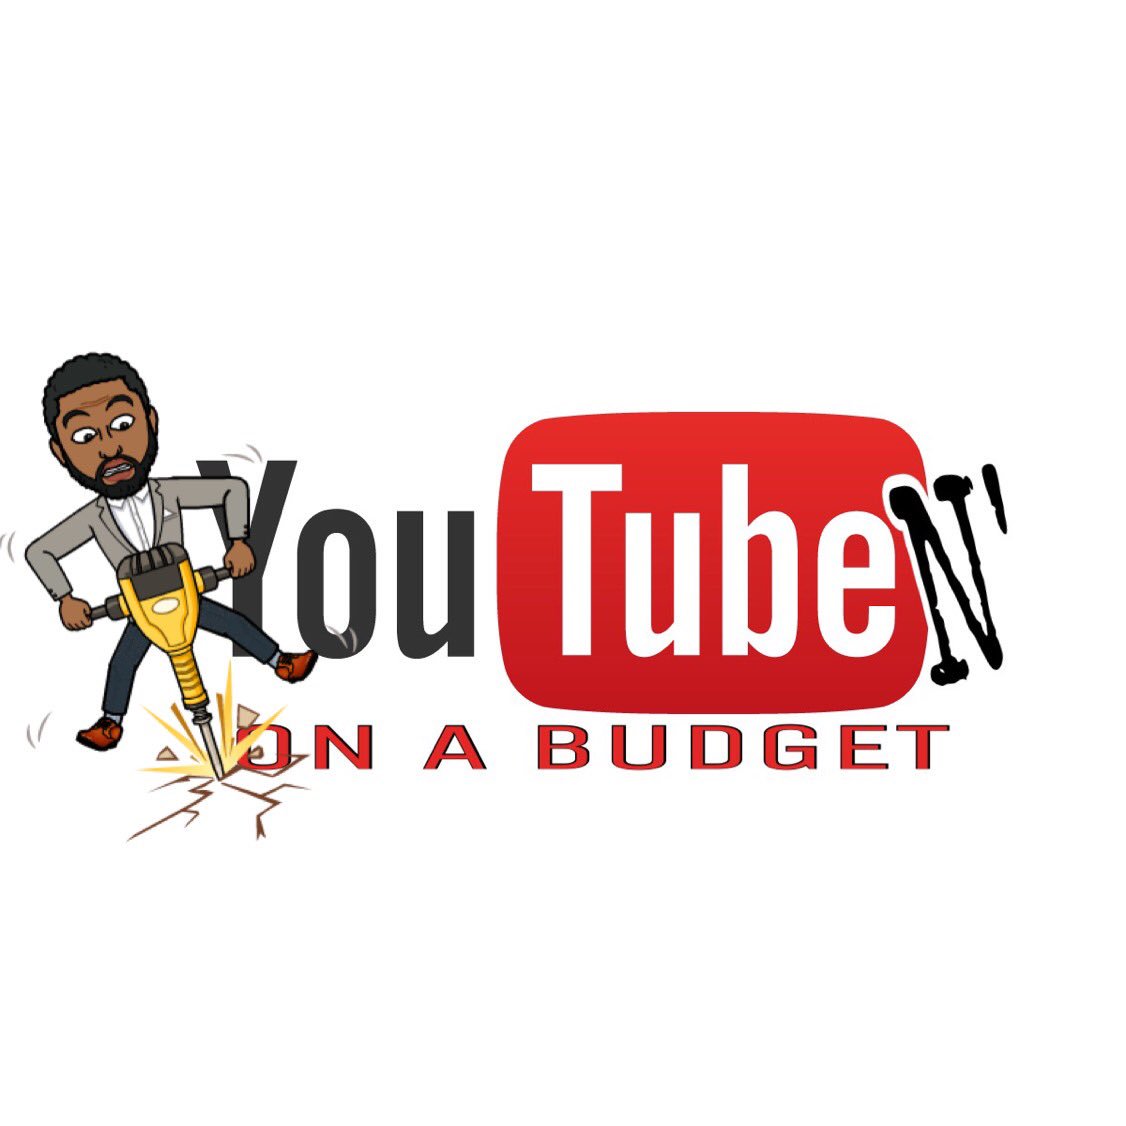 Budget youtube a n on 40 DIY